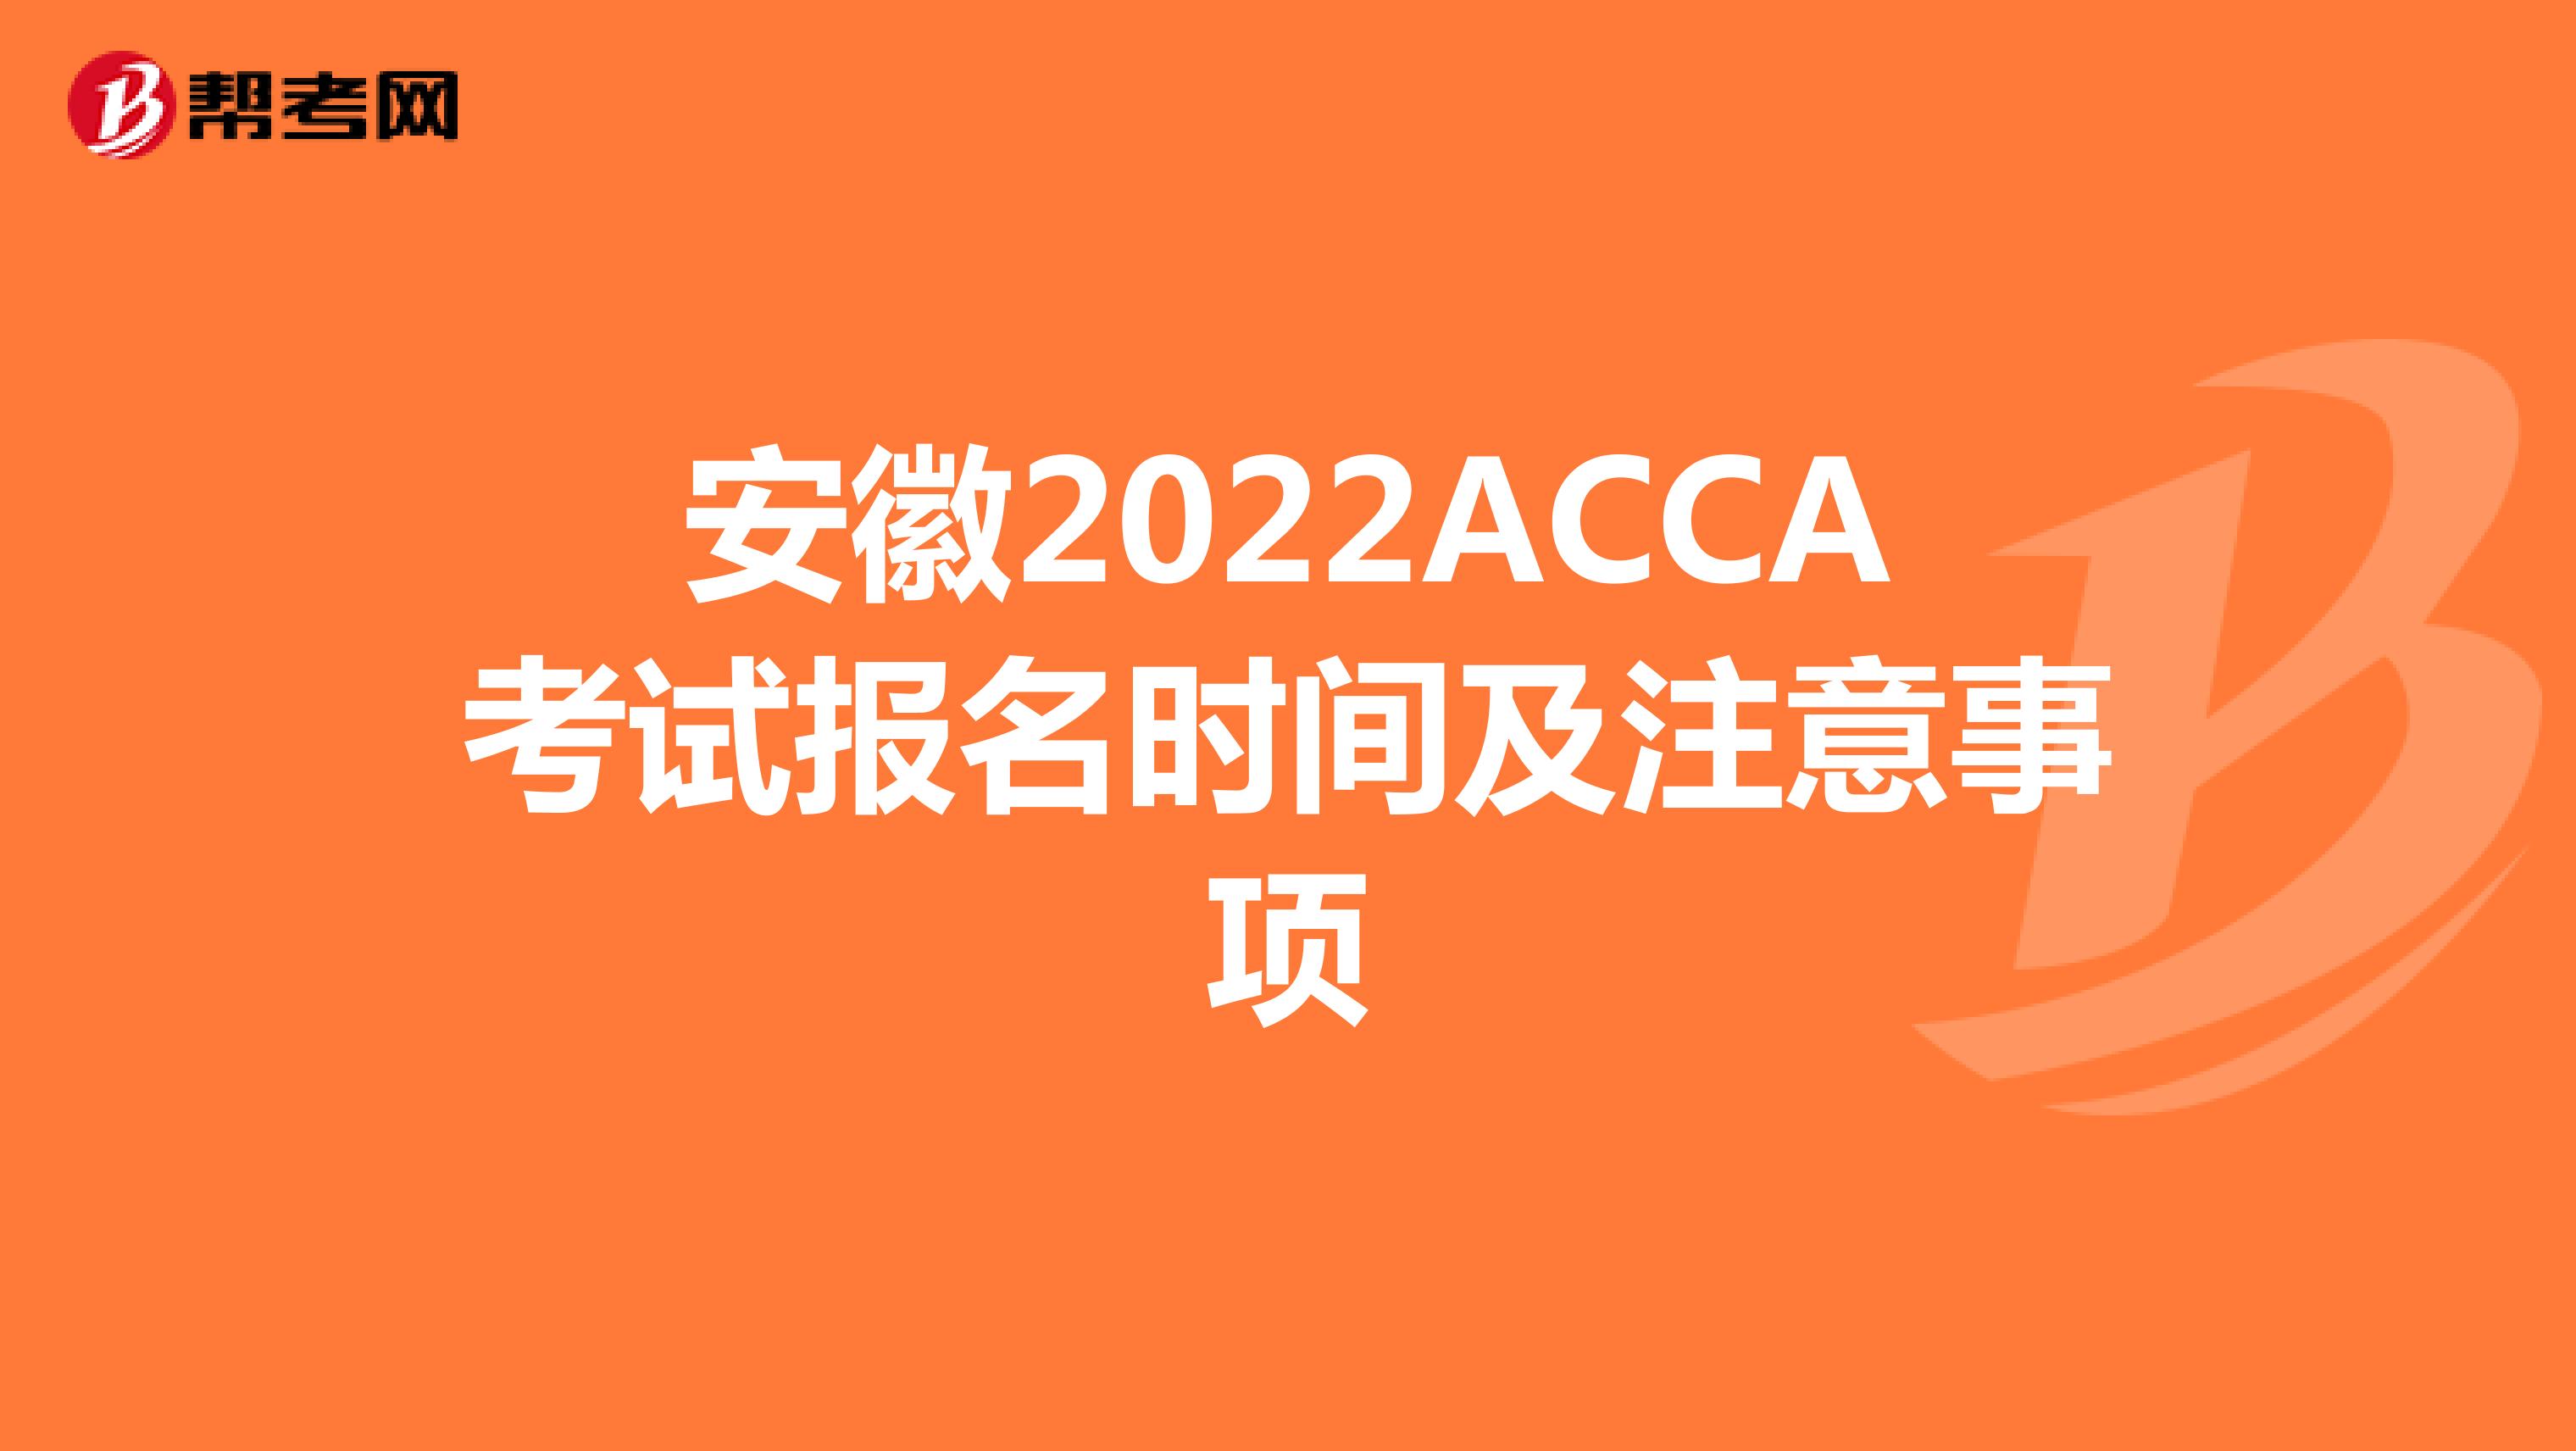 安徽2022ACCA考试报名时间及注意事项